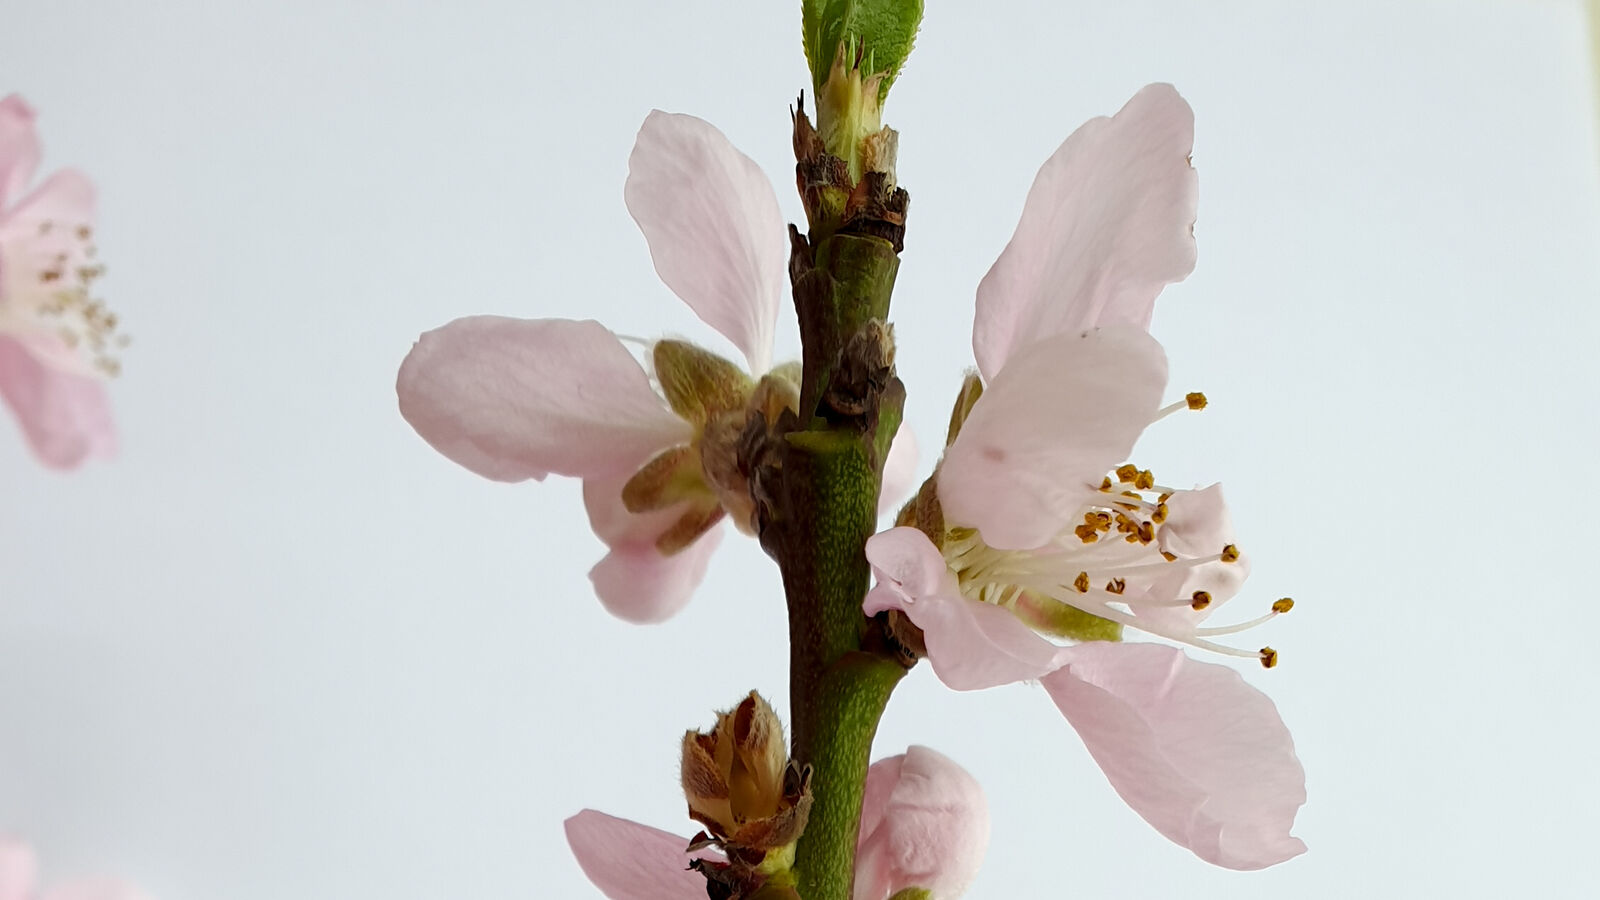 Pfirsichblüte am einjährigen Holz/Trieb.